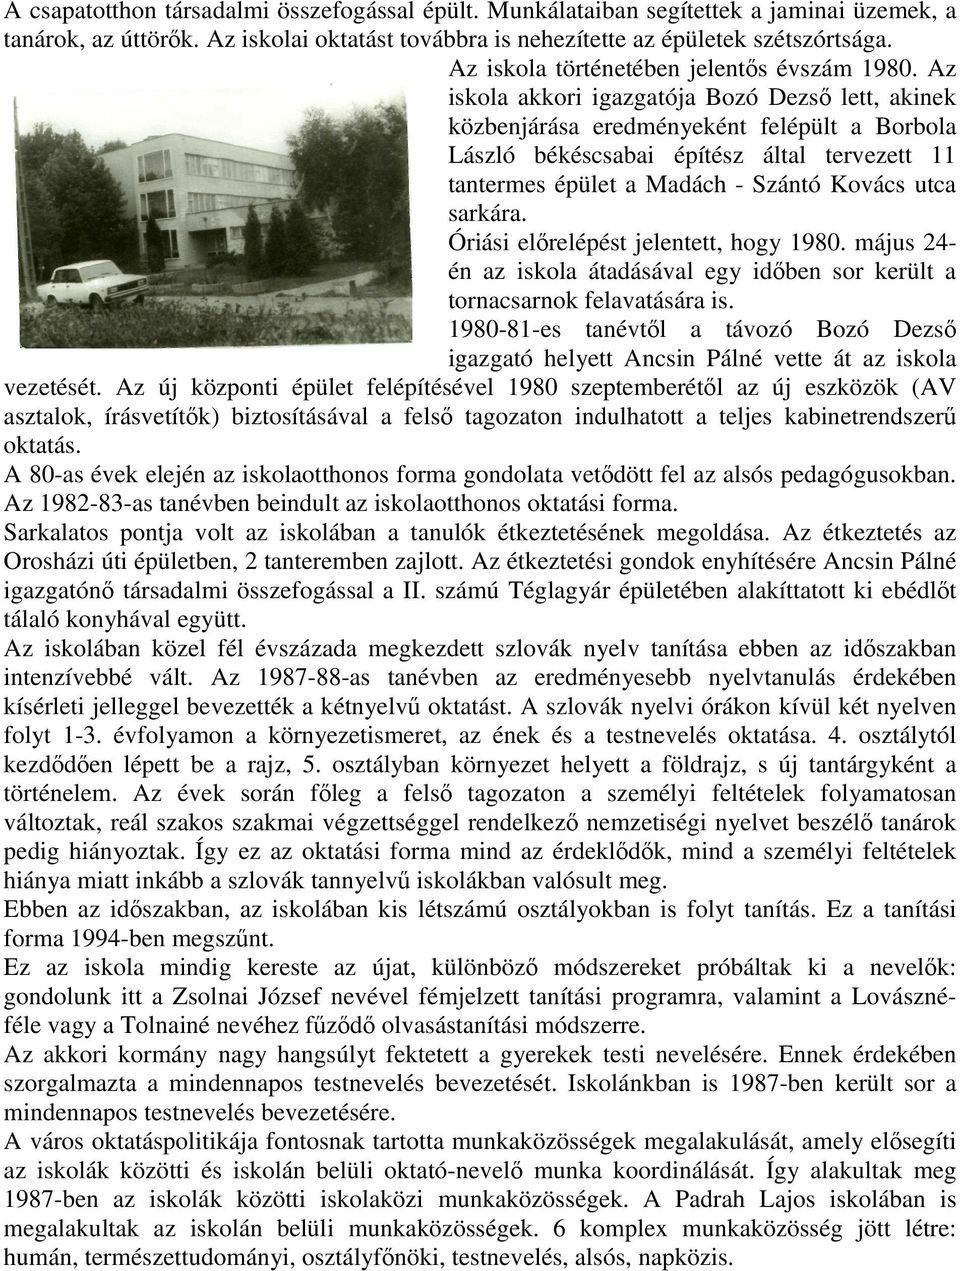 Az iskola akkori igazgatója Bozó Dezsı lett, akinek közbenjárása eredményeként felépült a Borbola László békéscsabai építész által tervezett 11 tantermes épület a Madách - Szántó Kovács utca sarkára.